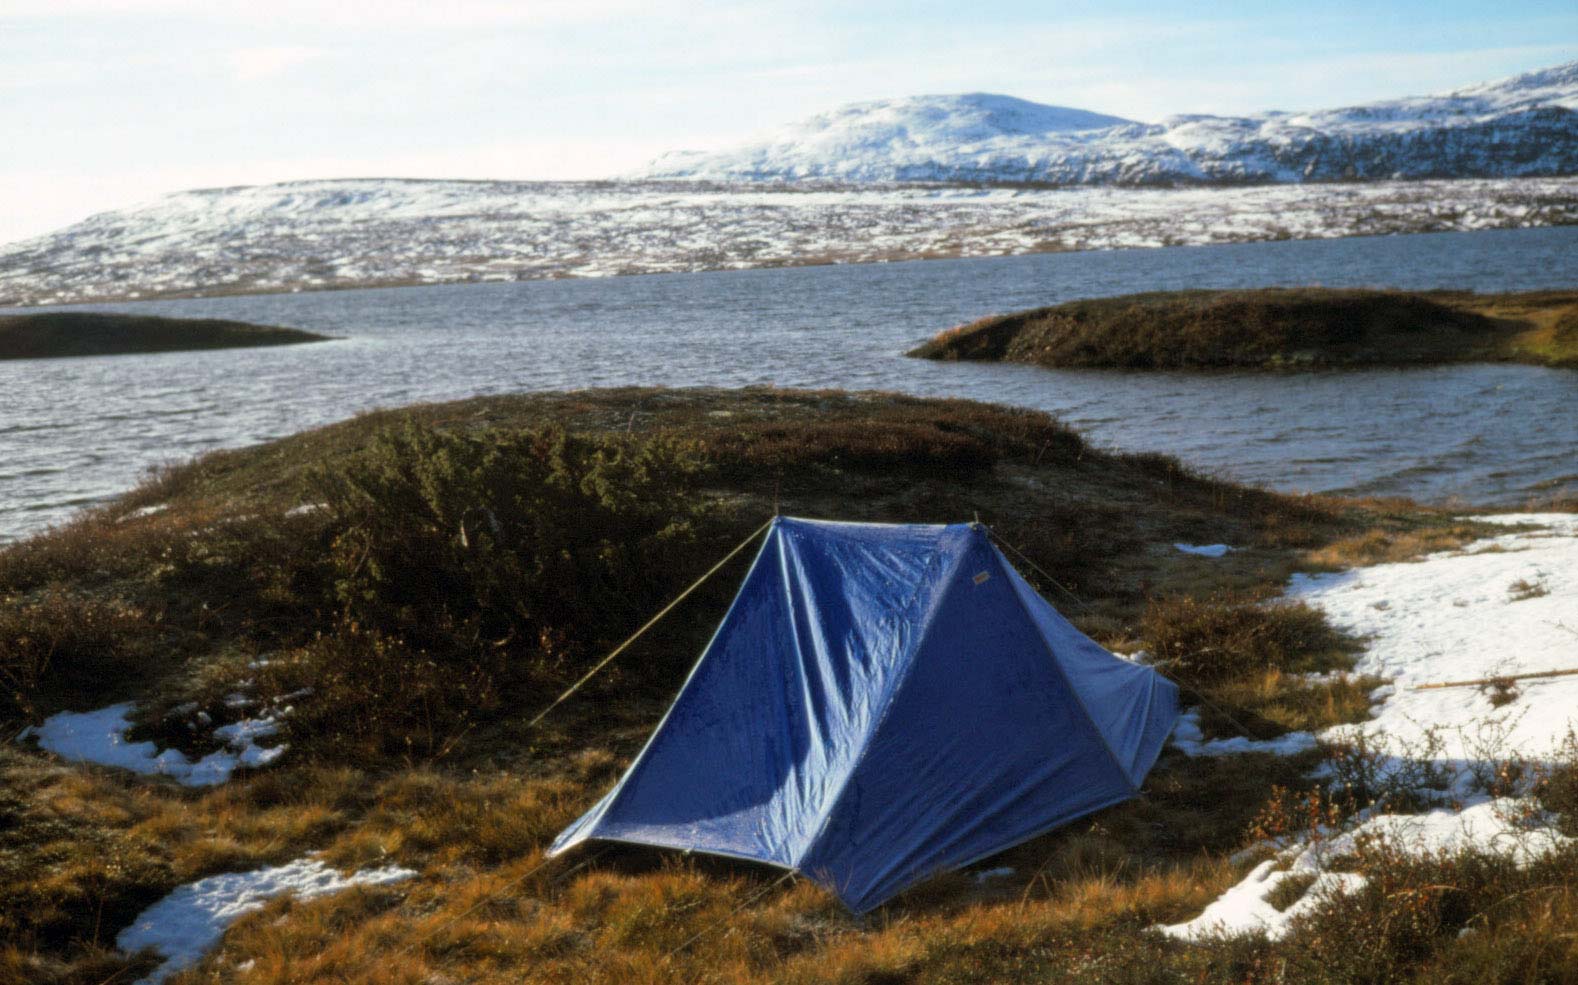 Tältet Fjällräven original använde vi under många år, vikt 2,4 kg. Från vandring från Gudå i Norge oktober 1975.